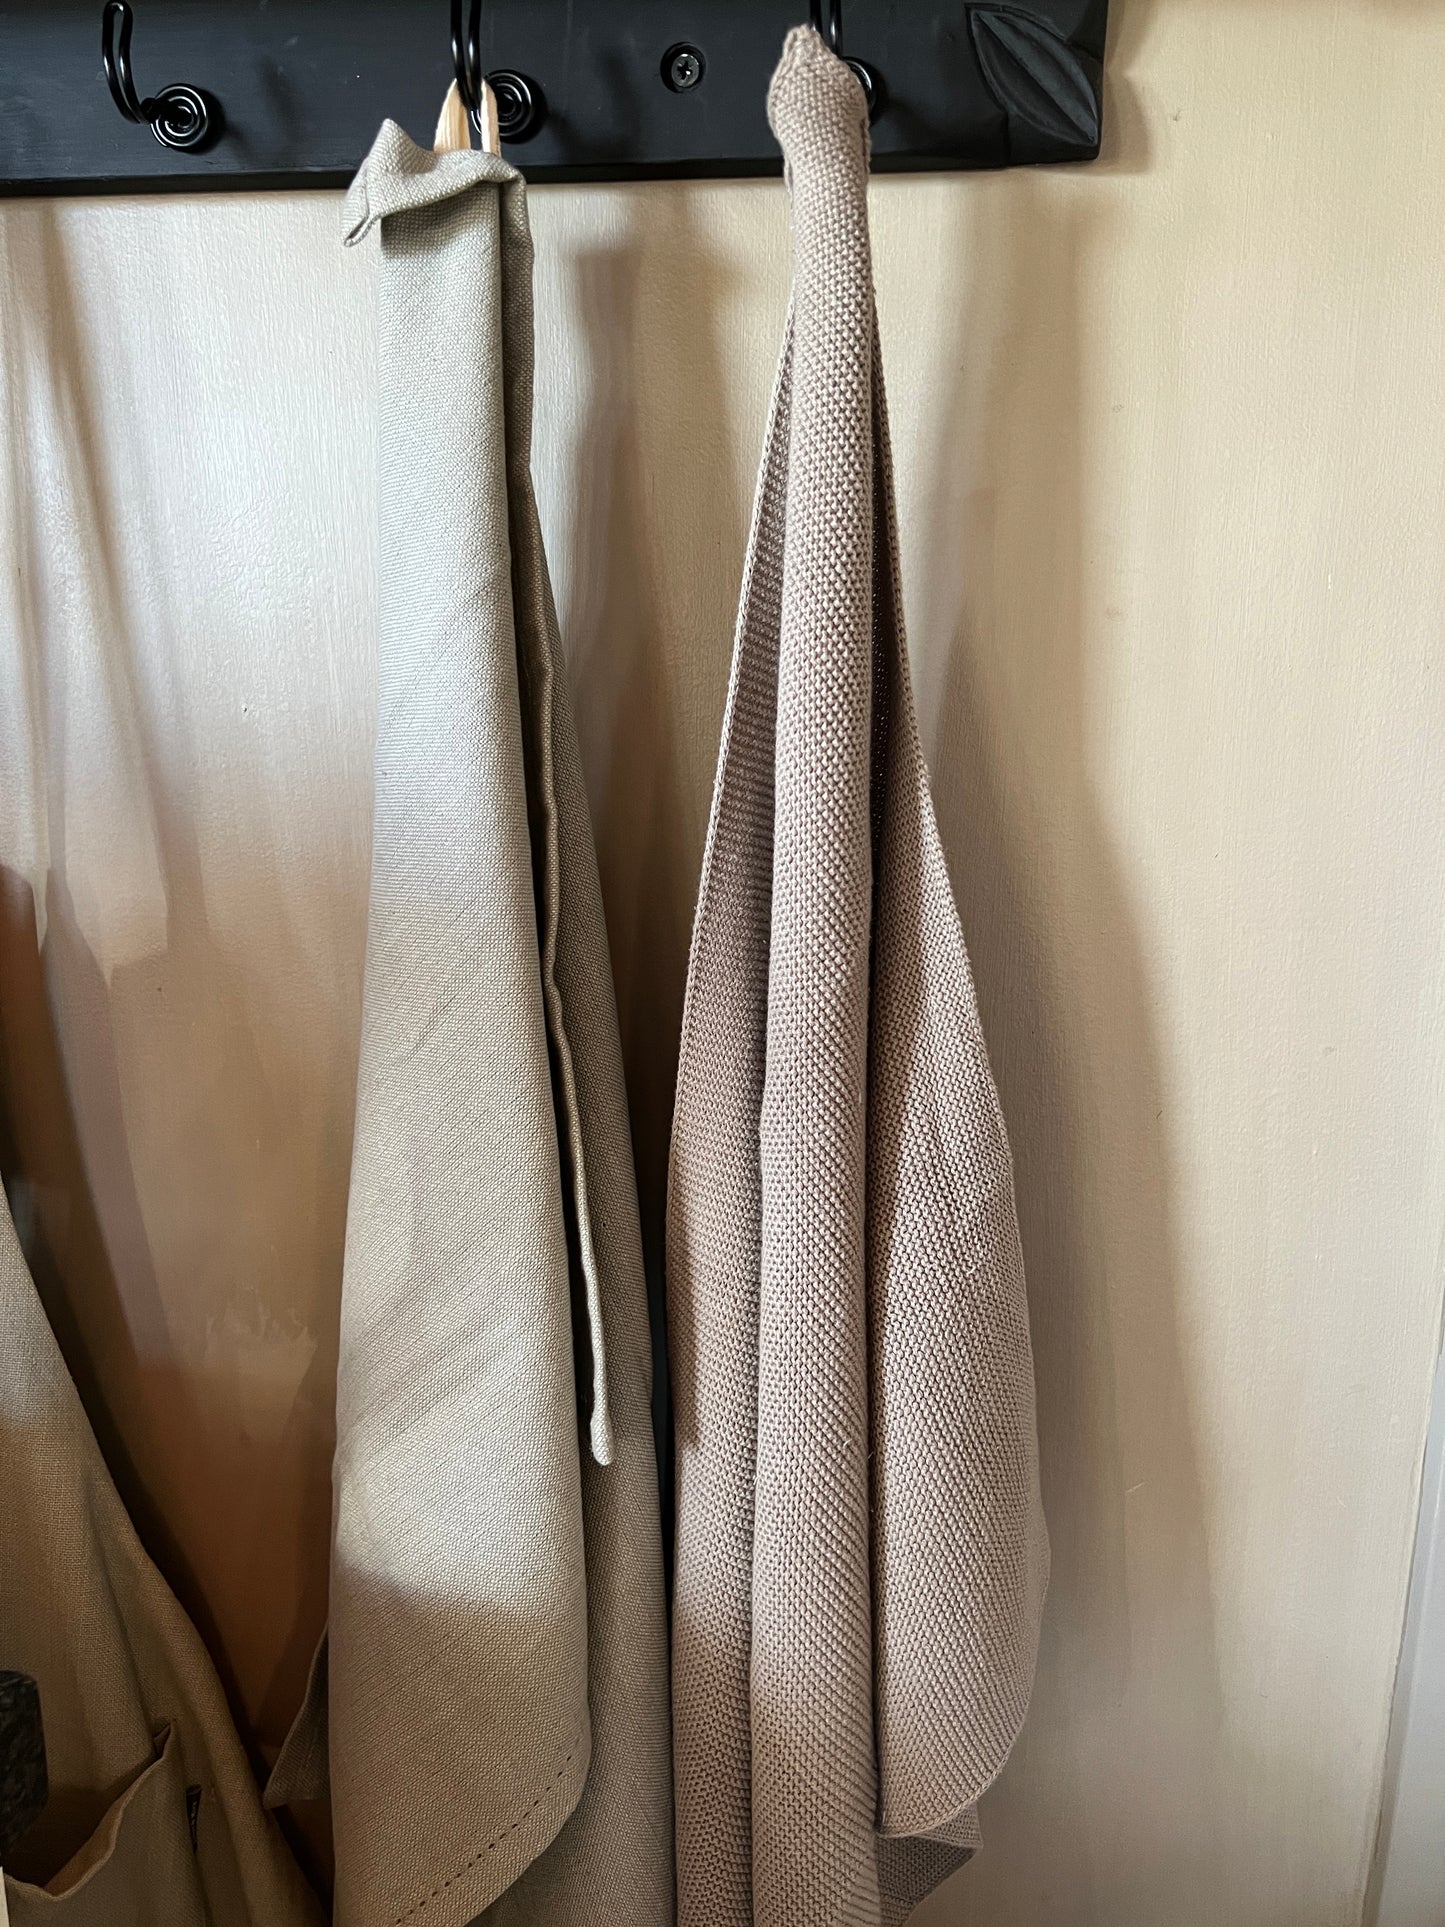 Tea towels, set of 3 pieces, beige